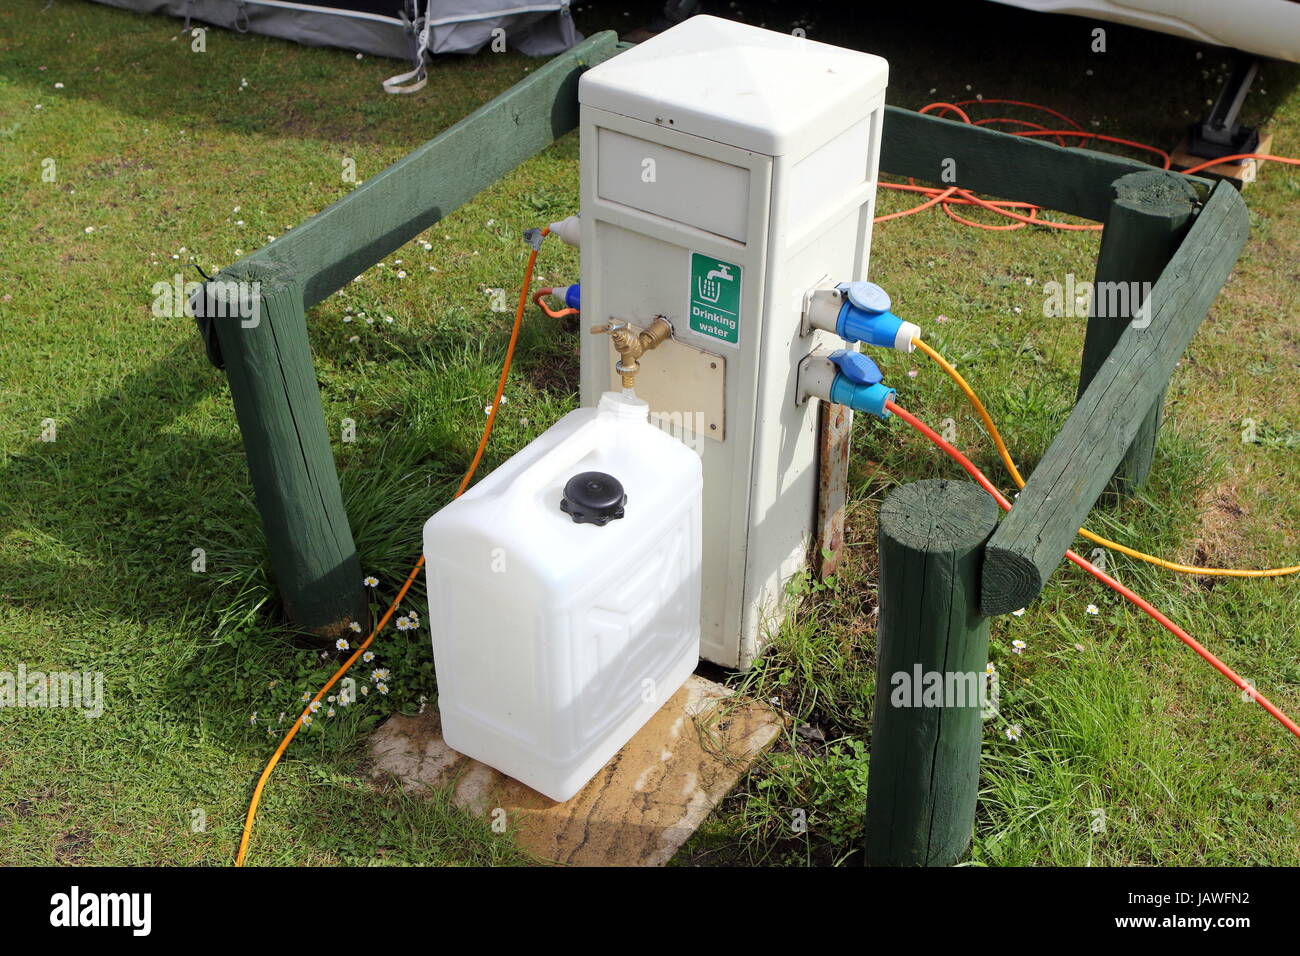 Befüllung eines Behälters Trinkwasser zu einem Campingplatz Wasser und  Strom Versorgung Stockfotografie - Alamy